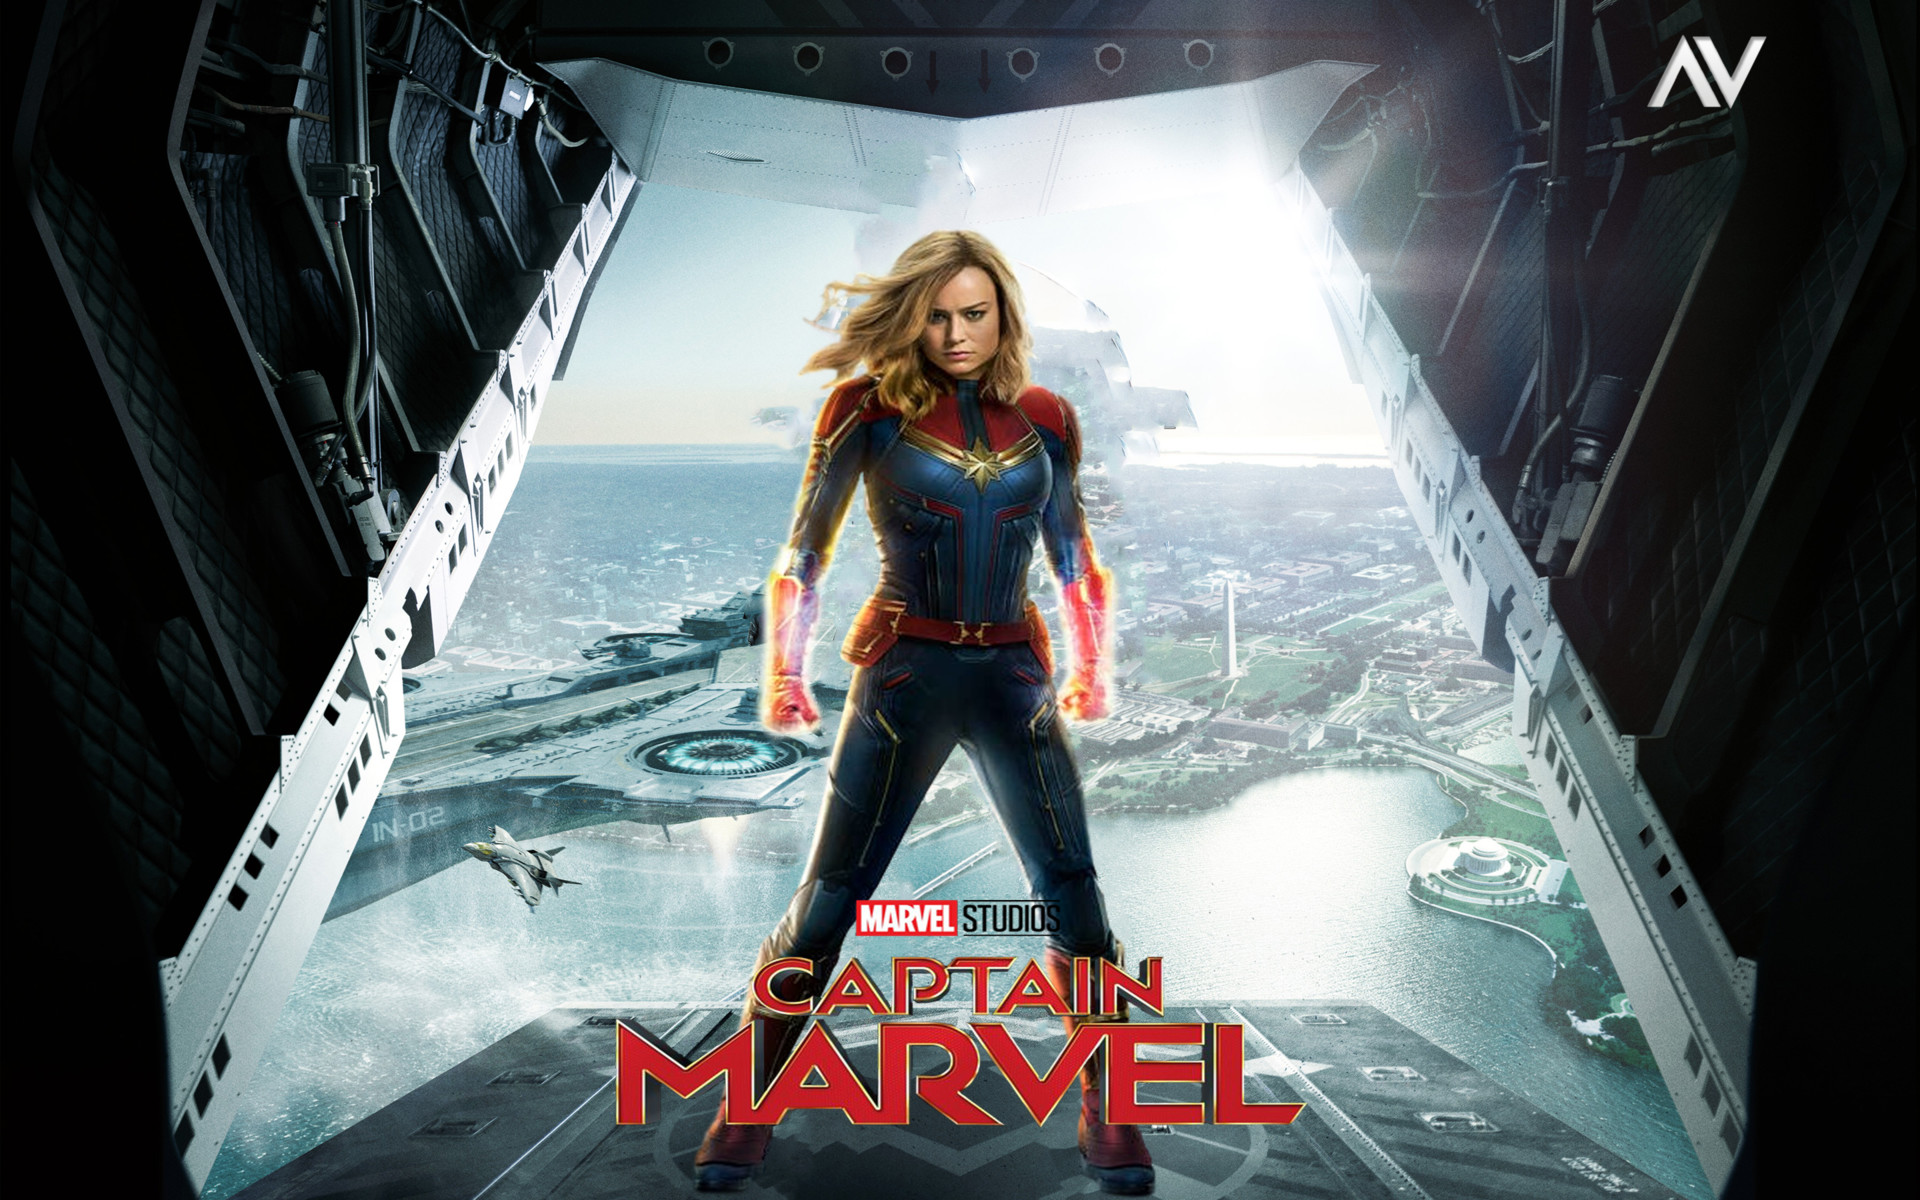 Marvel Studios' Captain Marvel - Trailer 2 